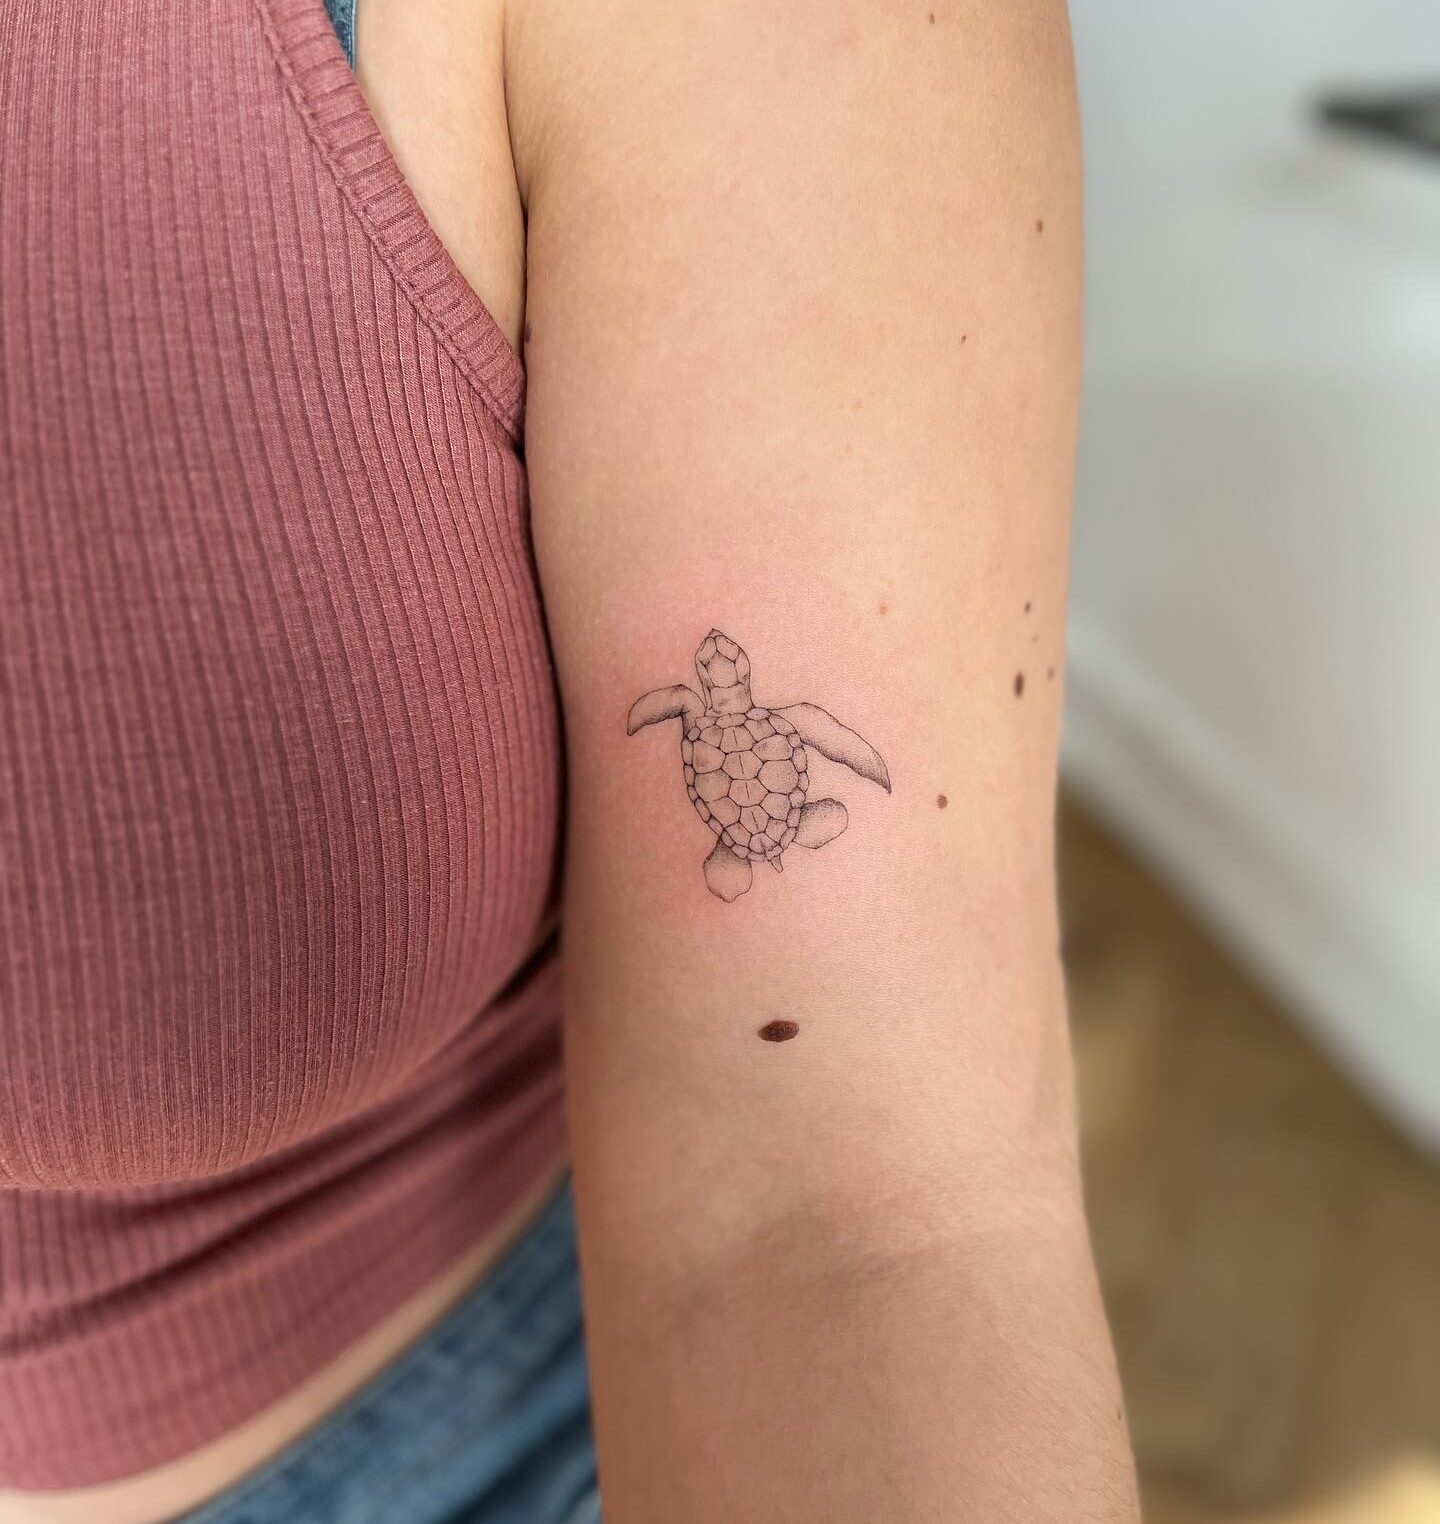 Sea turtle tattoo on the inner arm